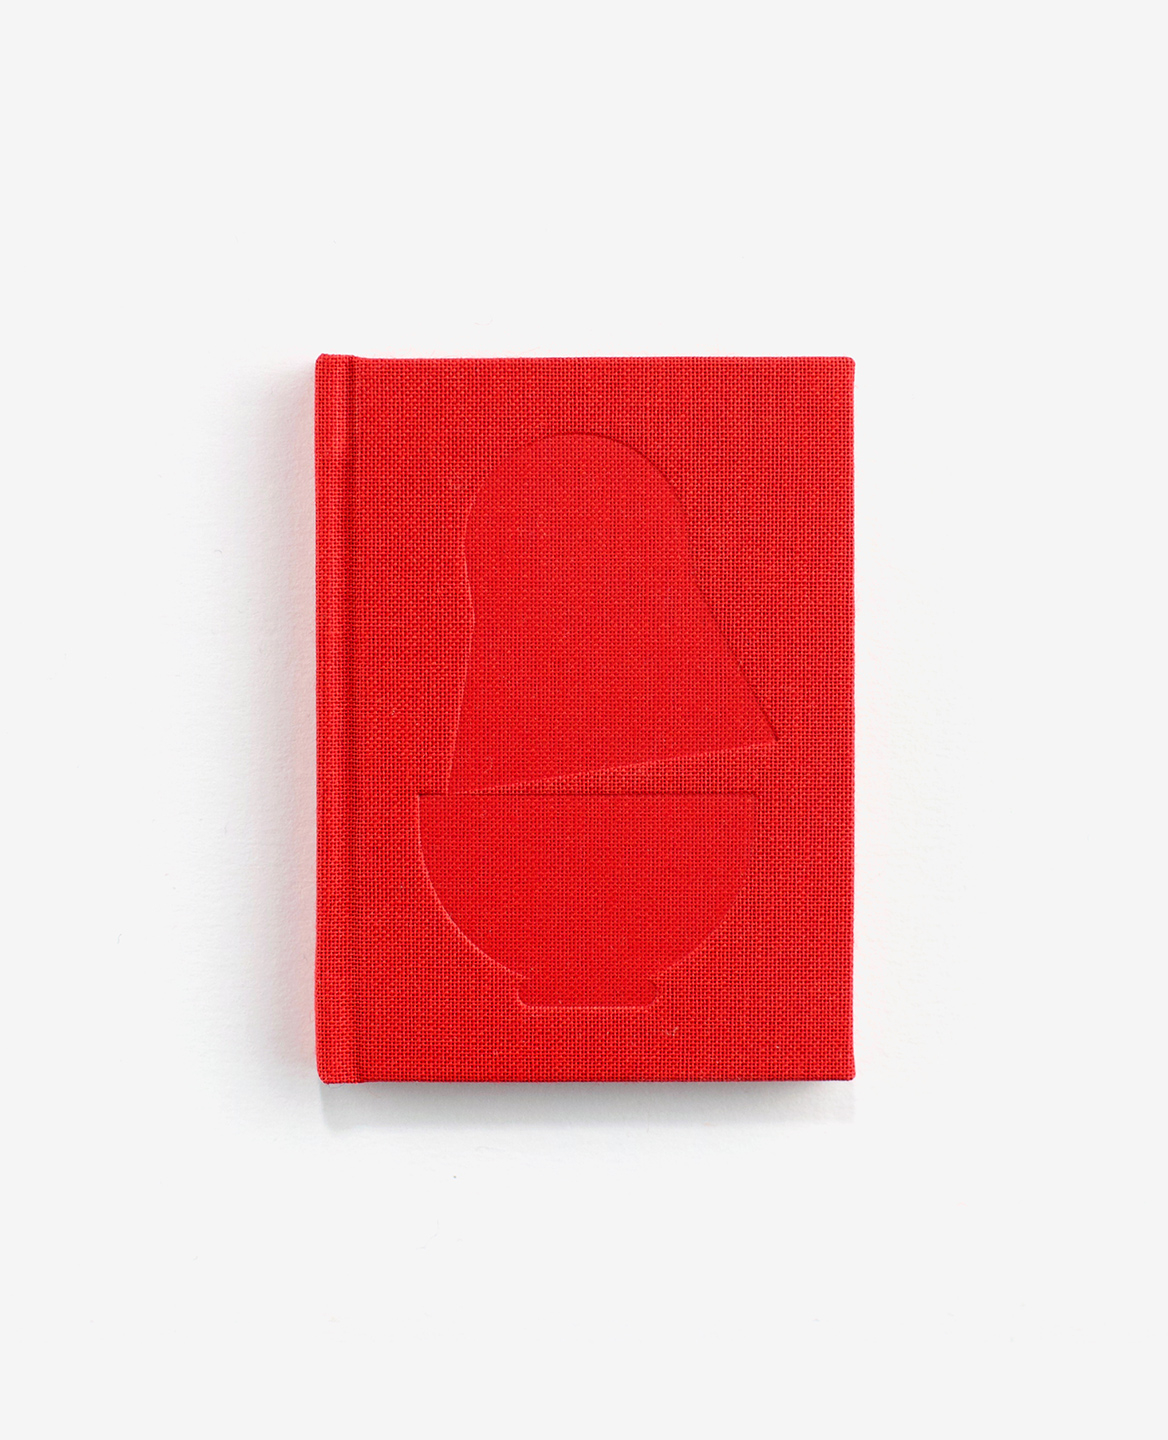 Couverture toile rouge du livre Matriochka de Fanette Mellier publié aux Éditions du livre